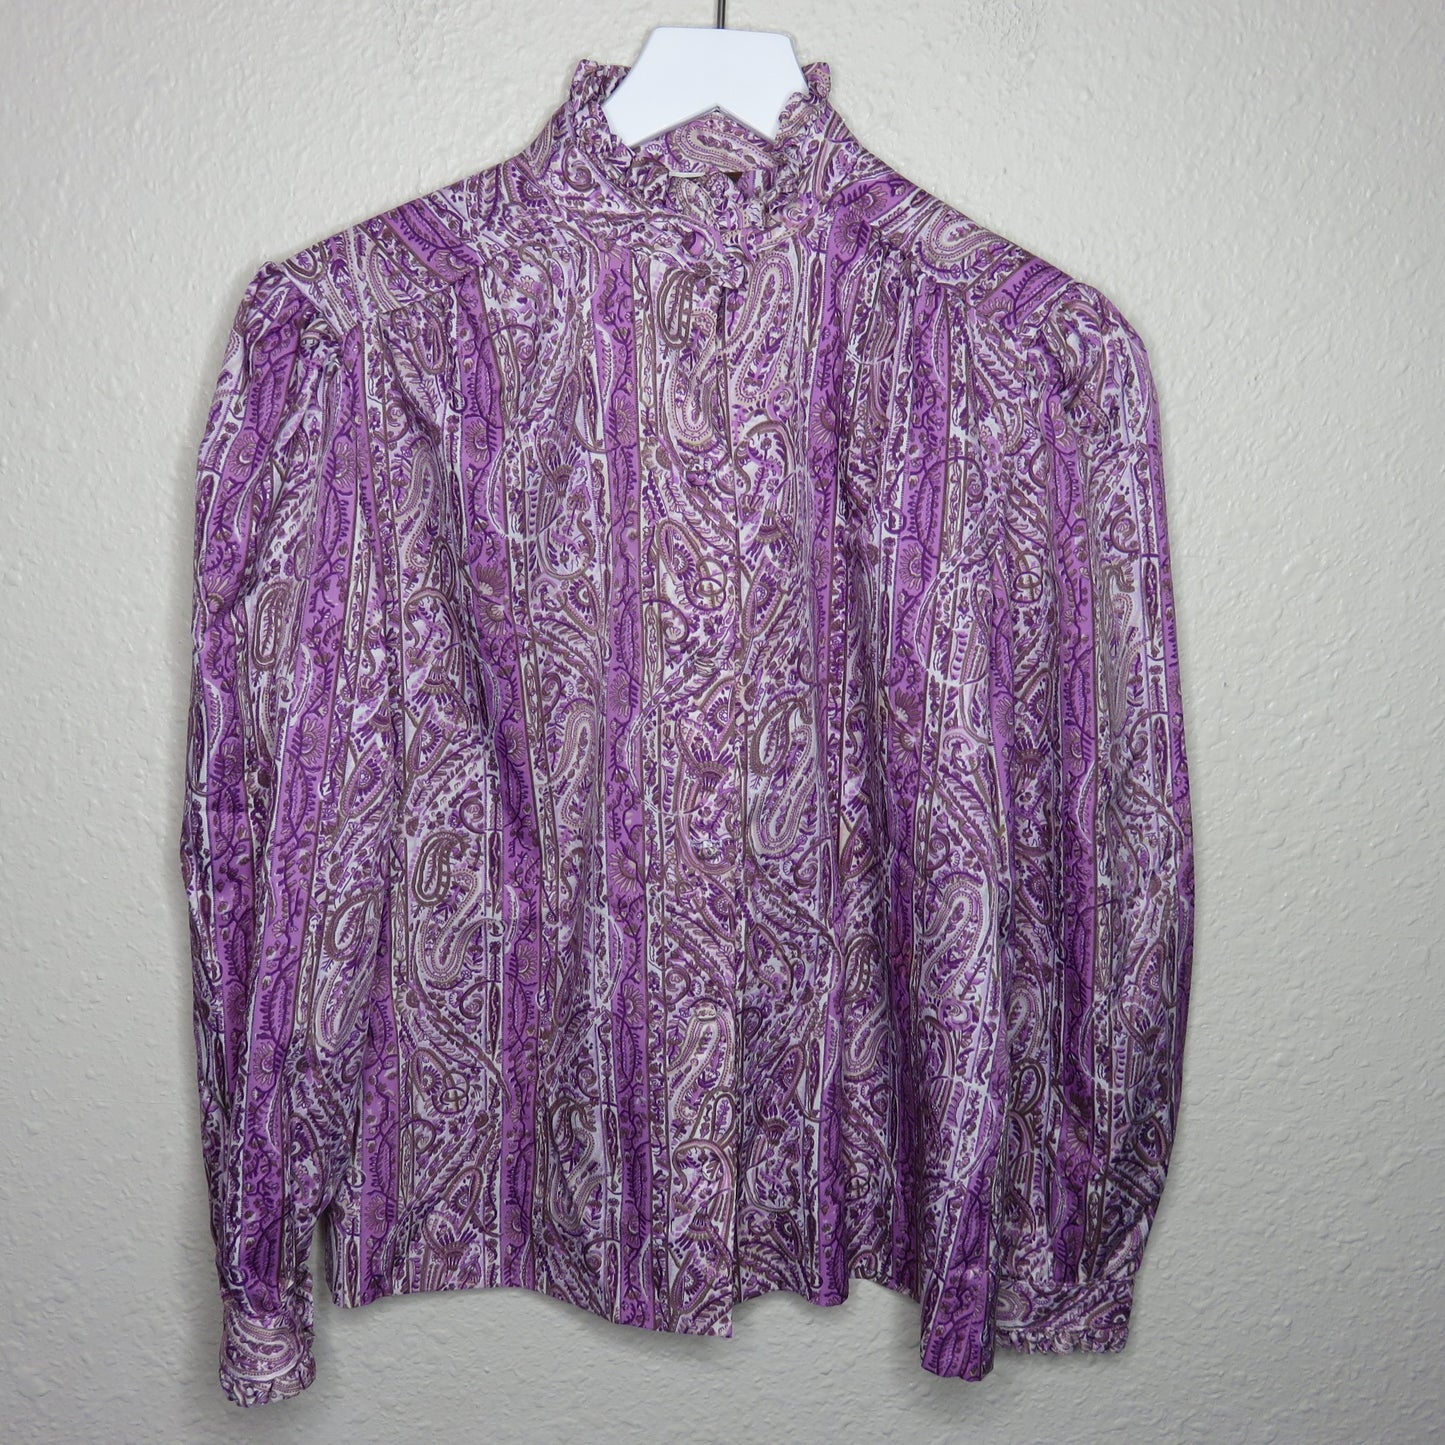 Vintage High Ruffle Neckline Purple Paisley Button Up Shirt - Women's M/L